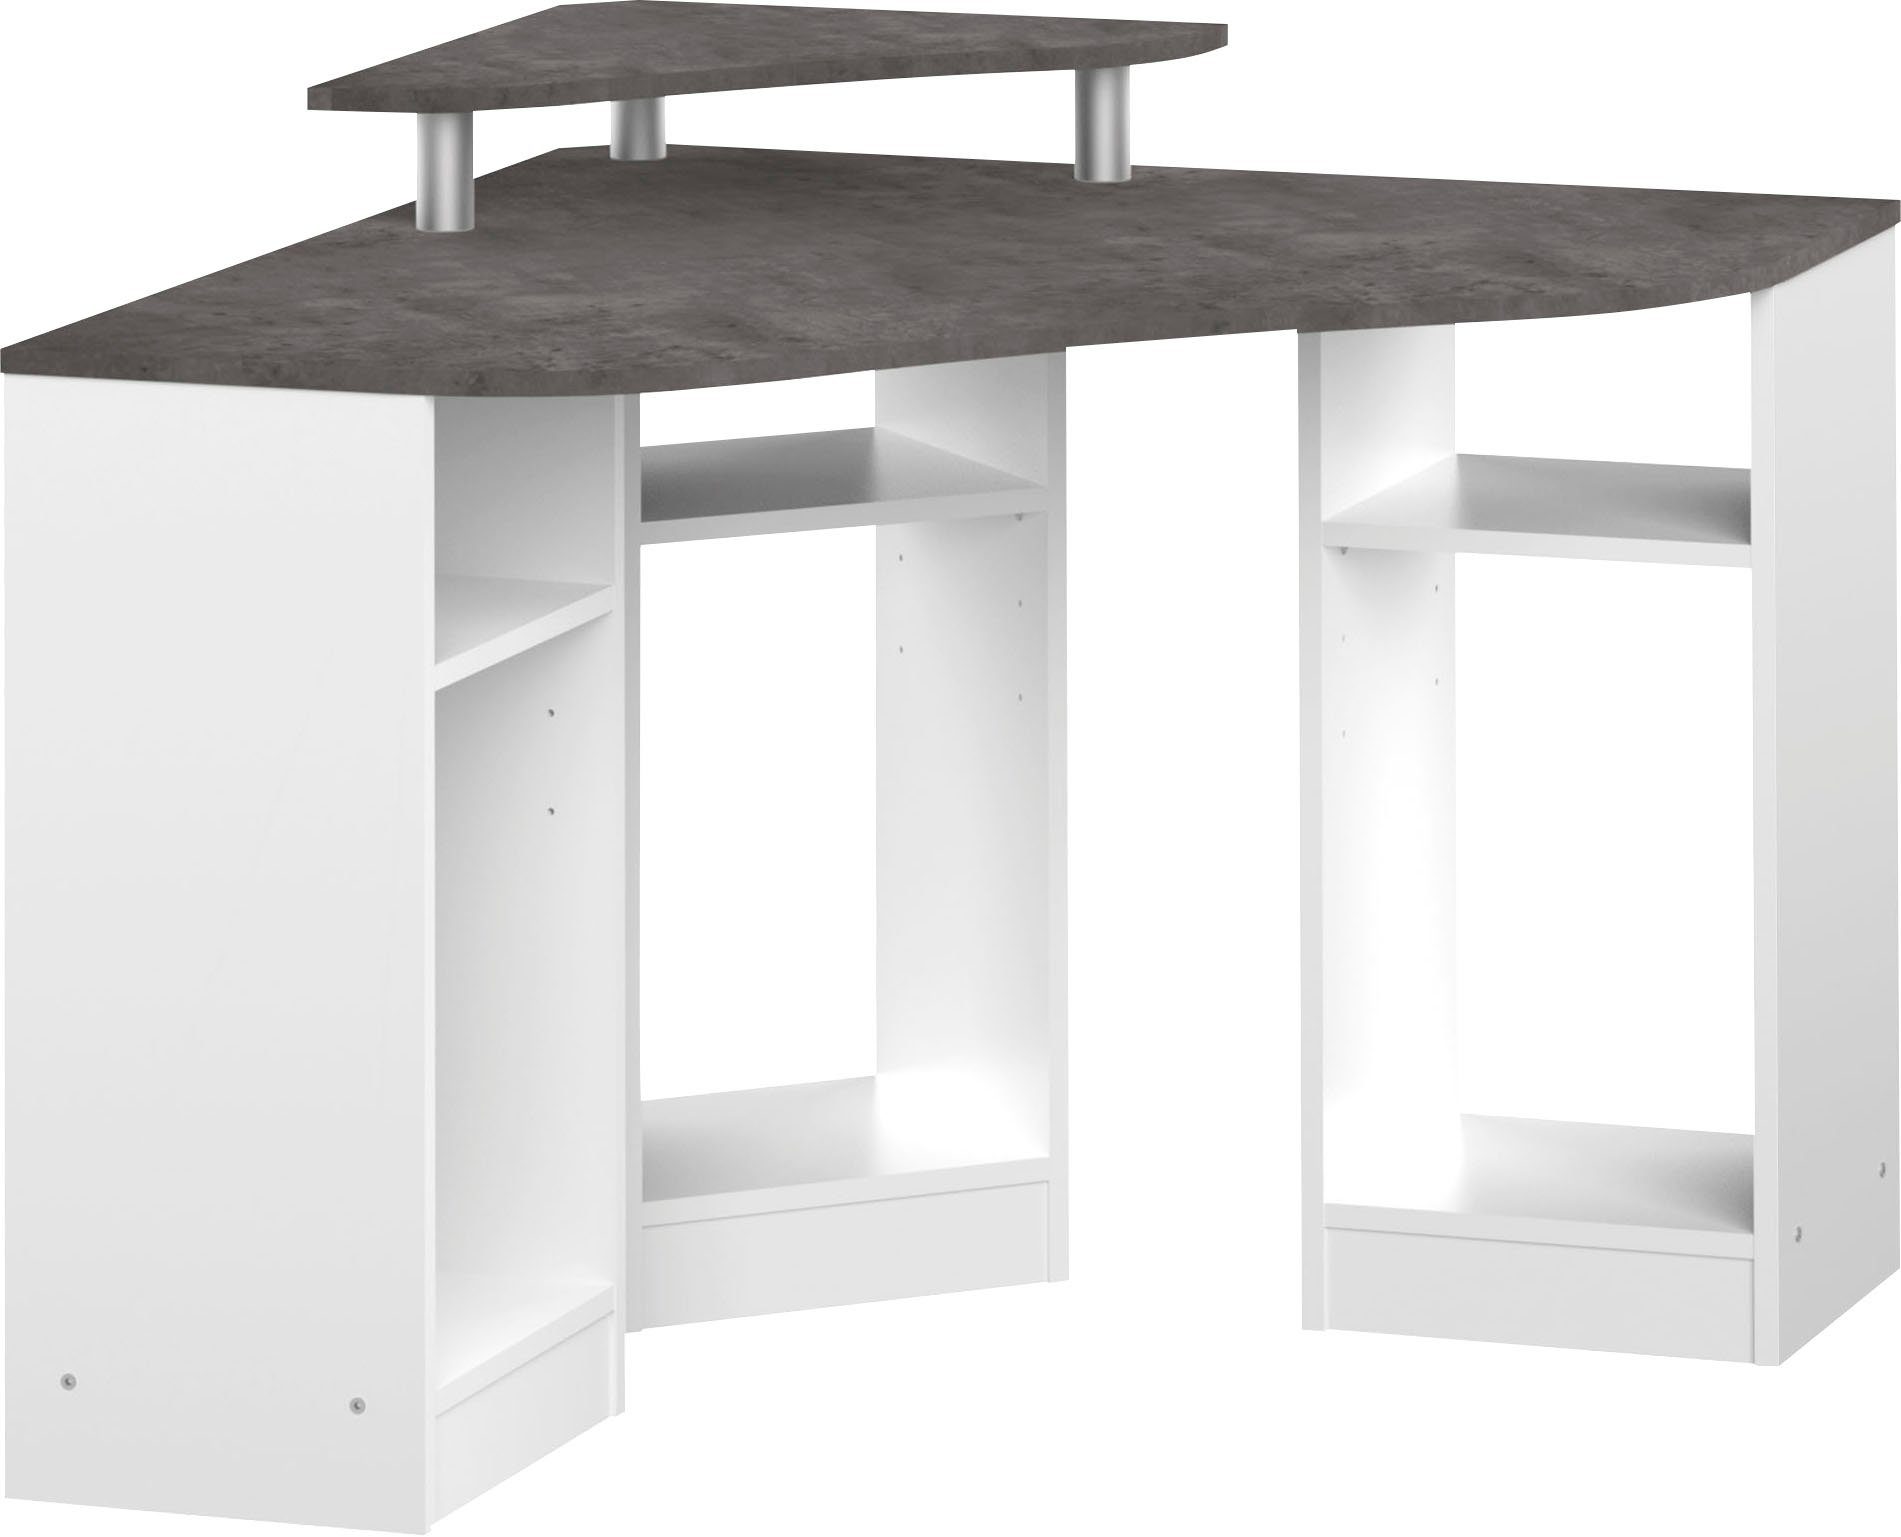 TemaHome Schreibtisch Corner, Melamingestell, Tischplatte in untersch. Farbvarianten, Breite 94 cm weiß/anthrazit | betonfarbig